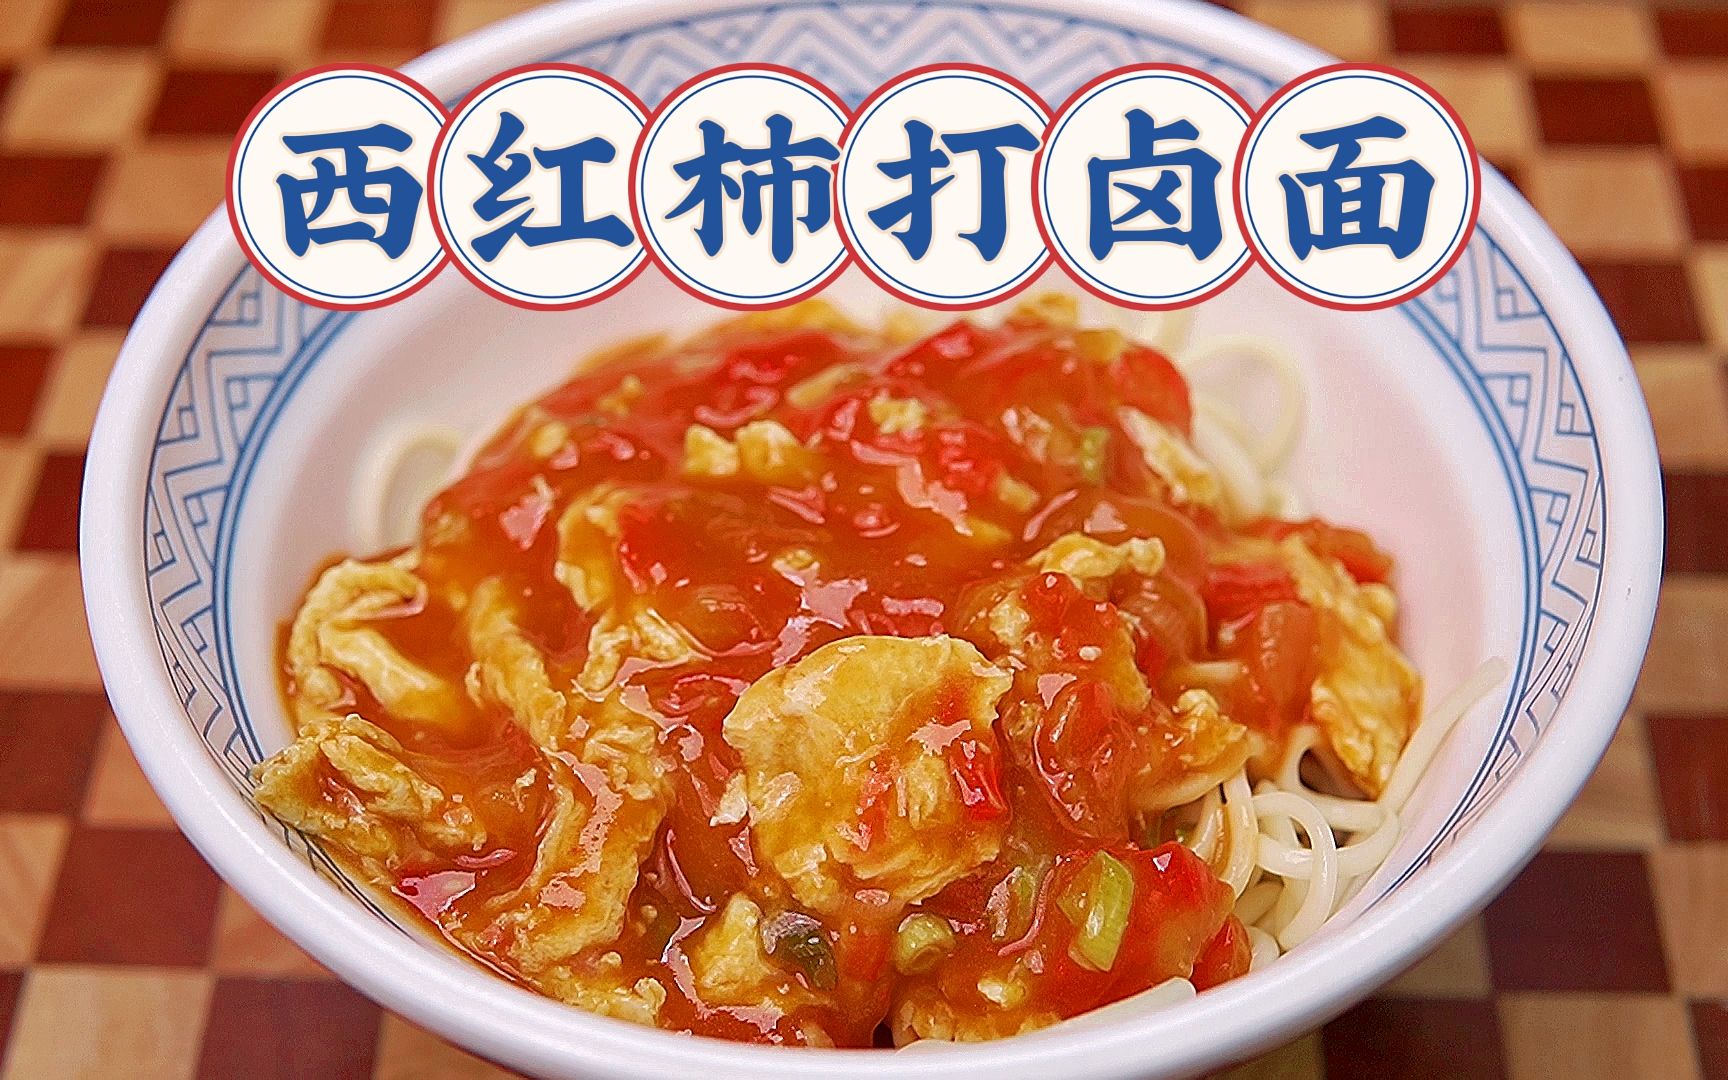 好吃简单的打卤面做法 吃一次念念不忘 - 中国食品网络电视台